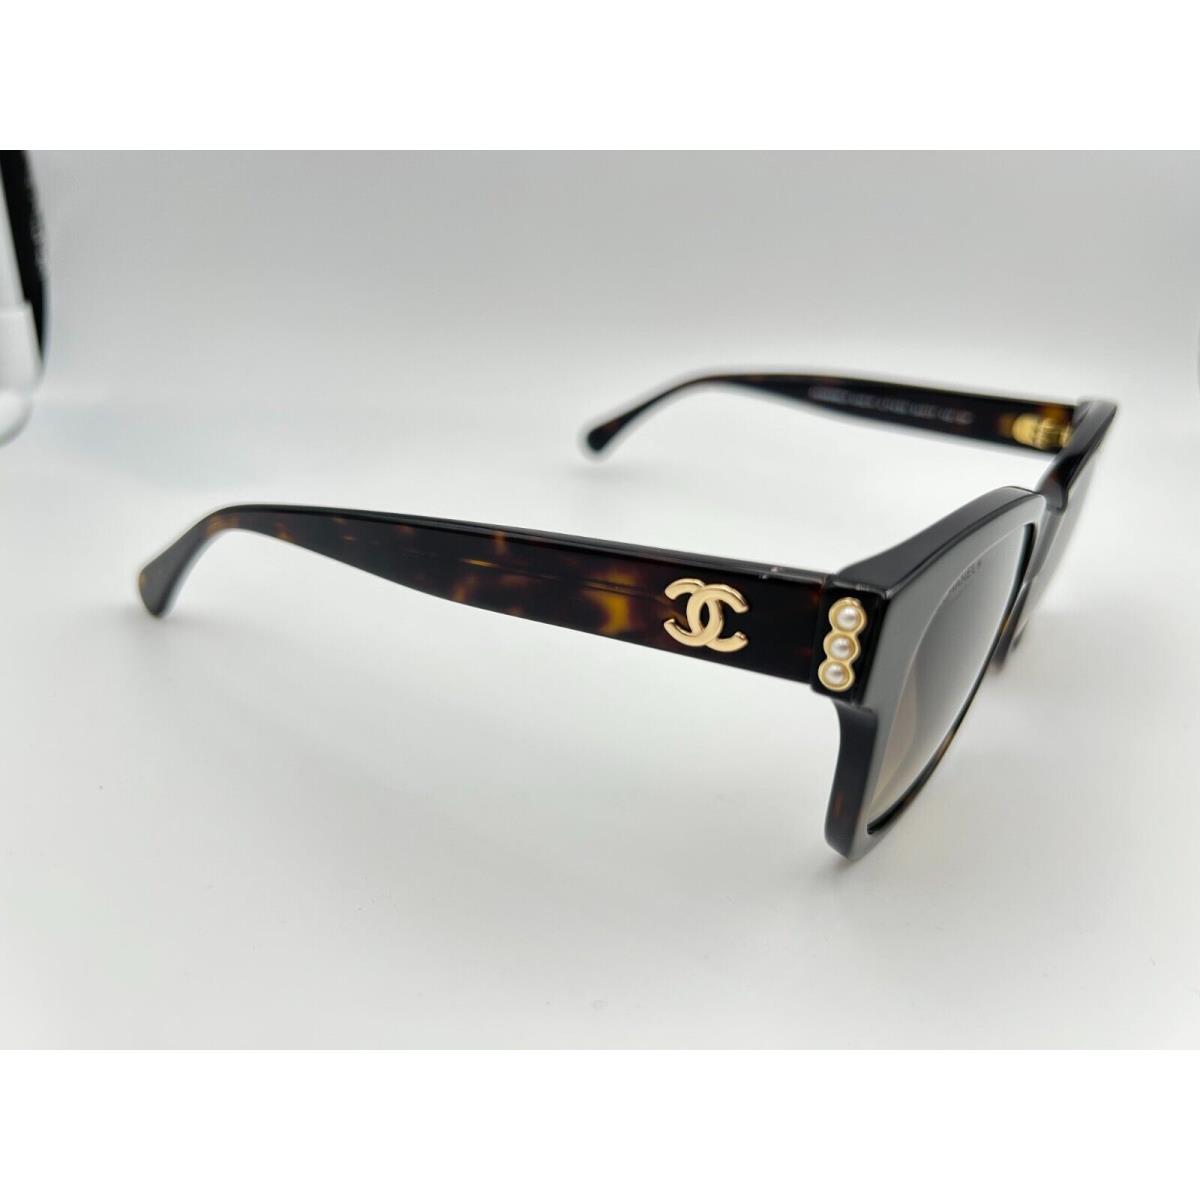 chanel black square sunglasses